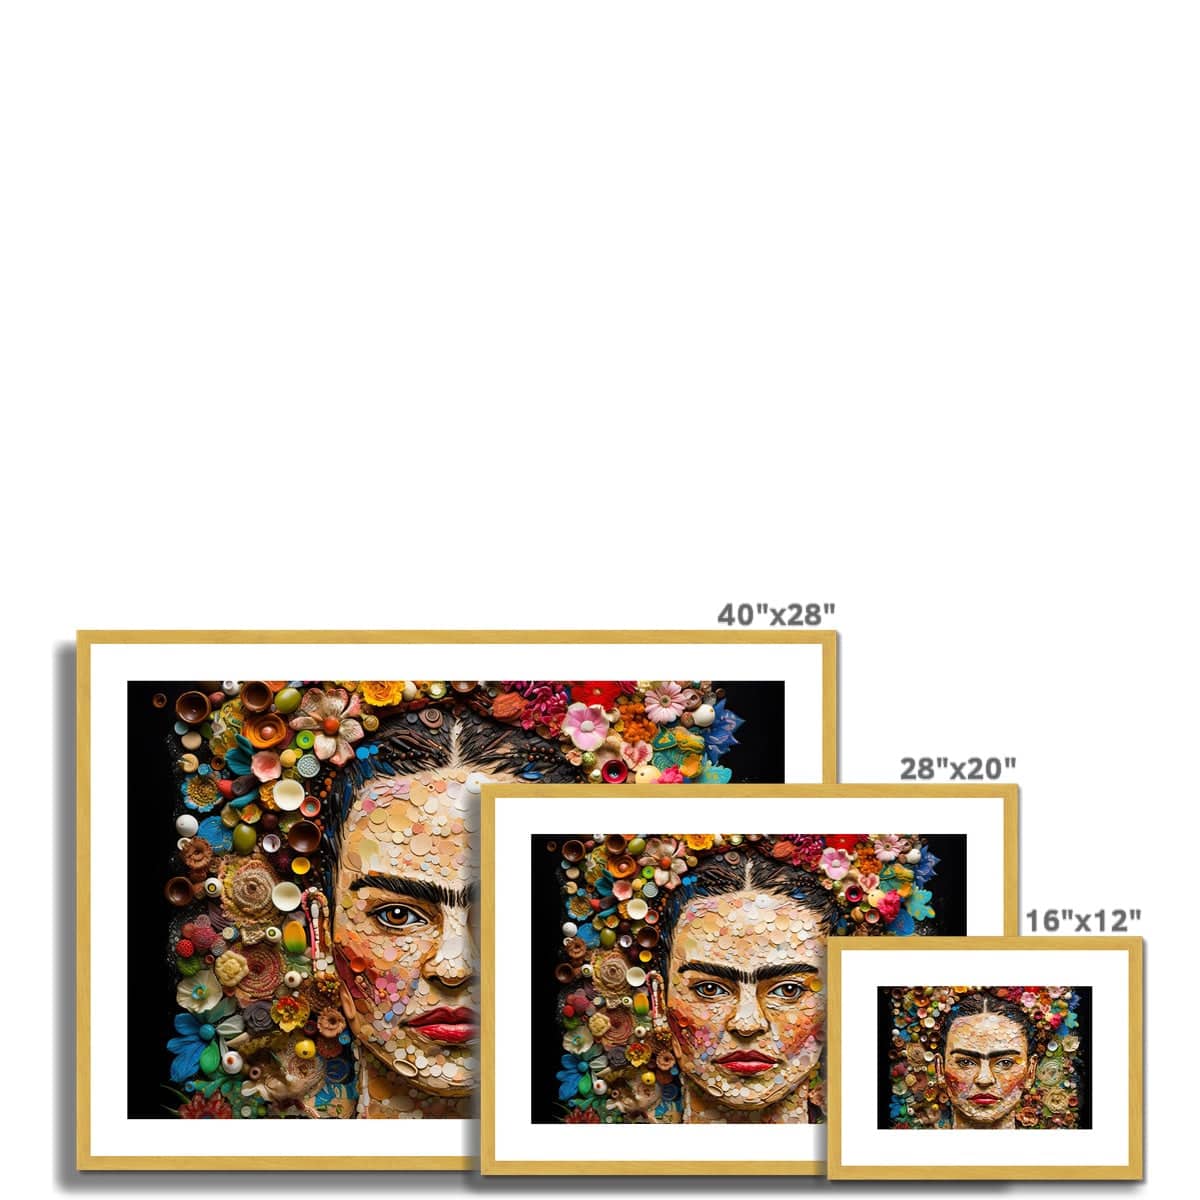 Frida Kahlo Portrait Antique Framed & Mounted Print - Pixel Gallery